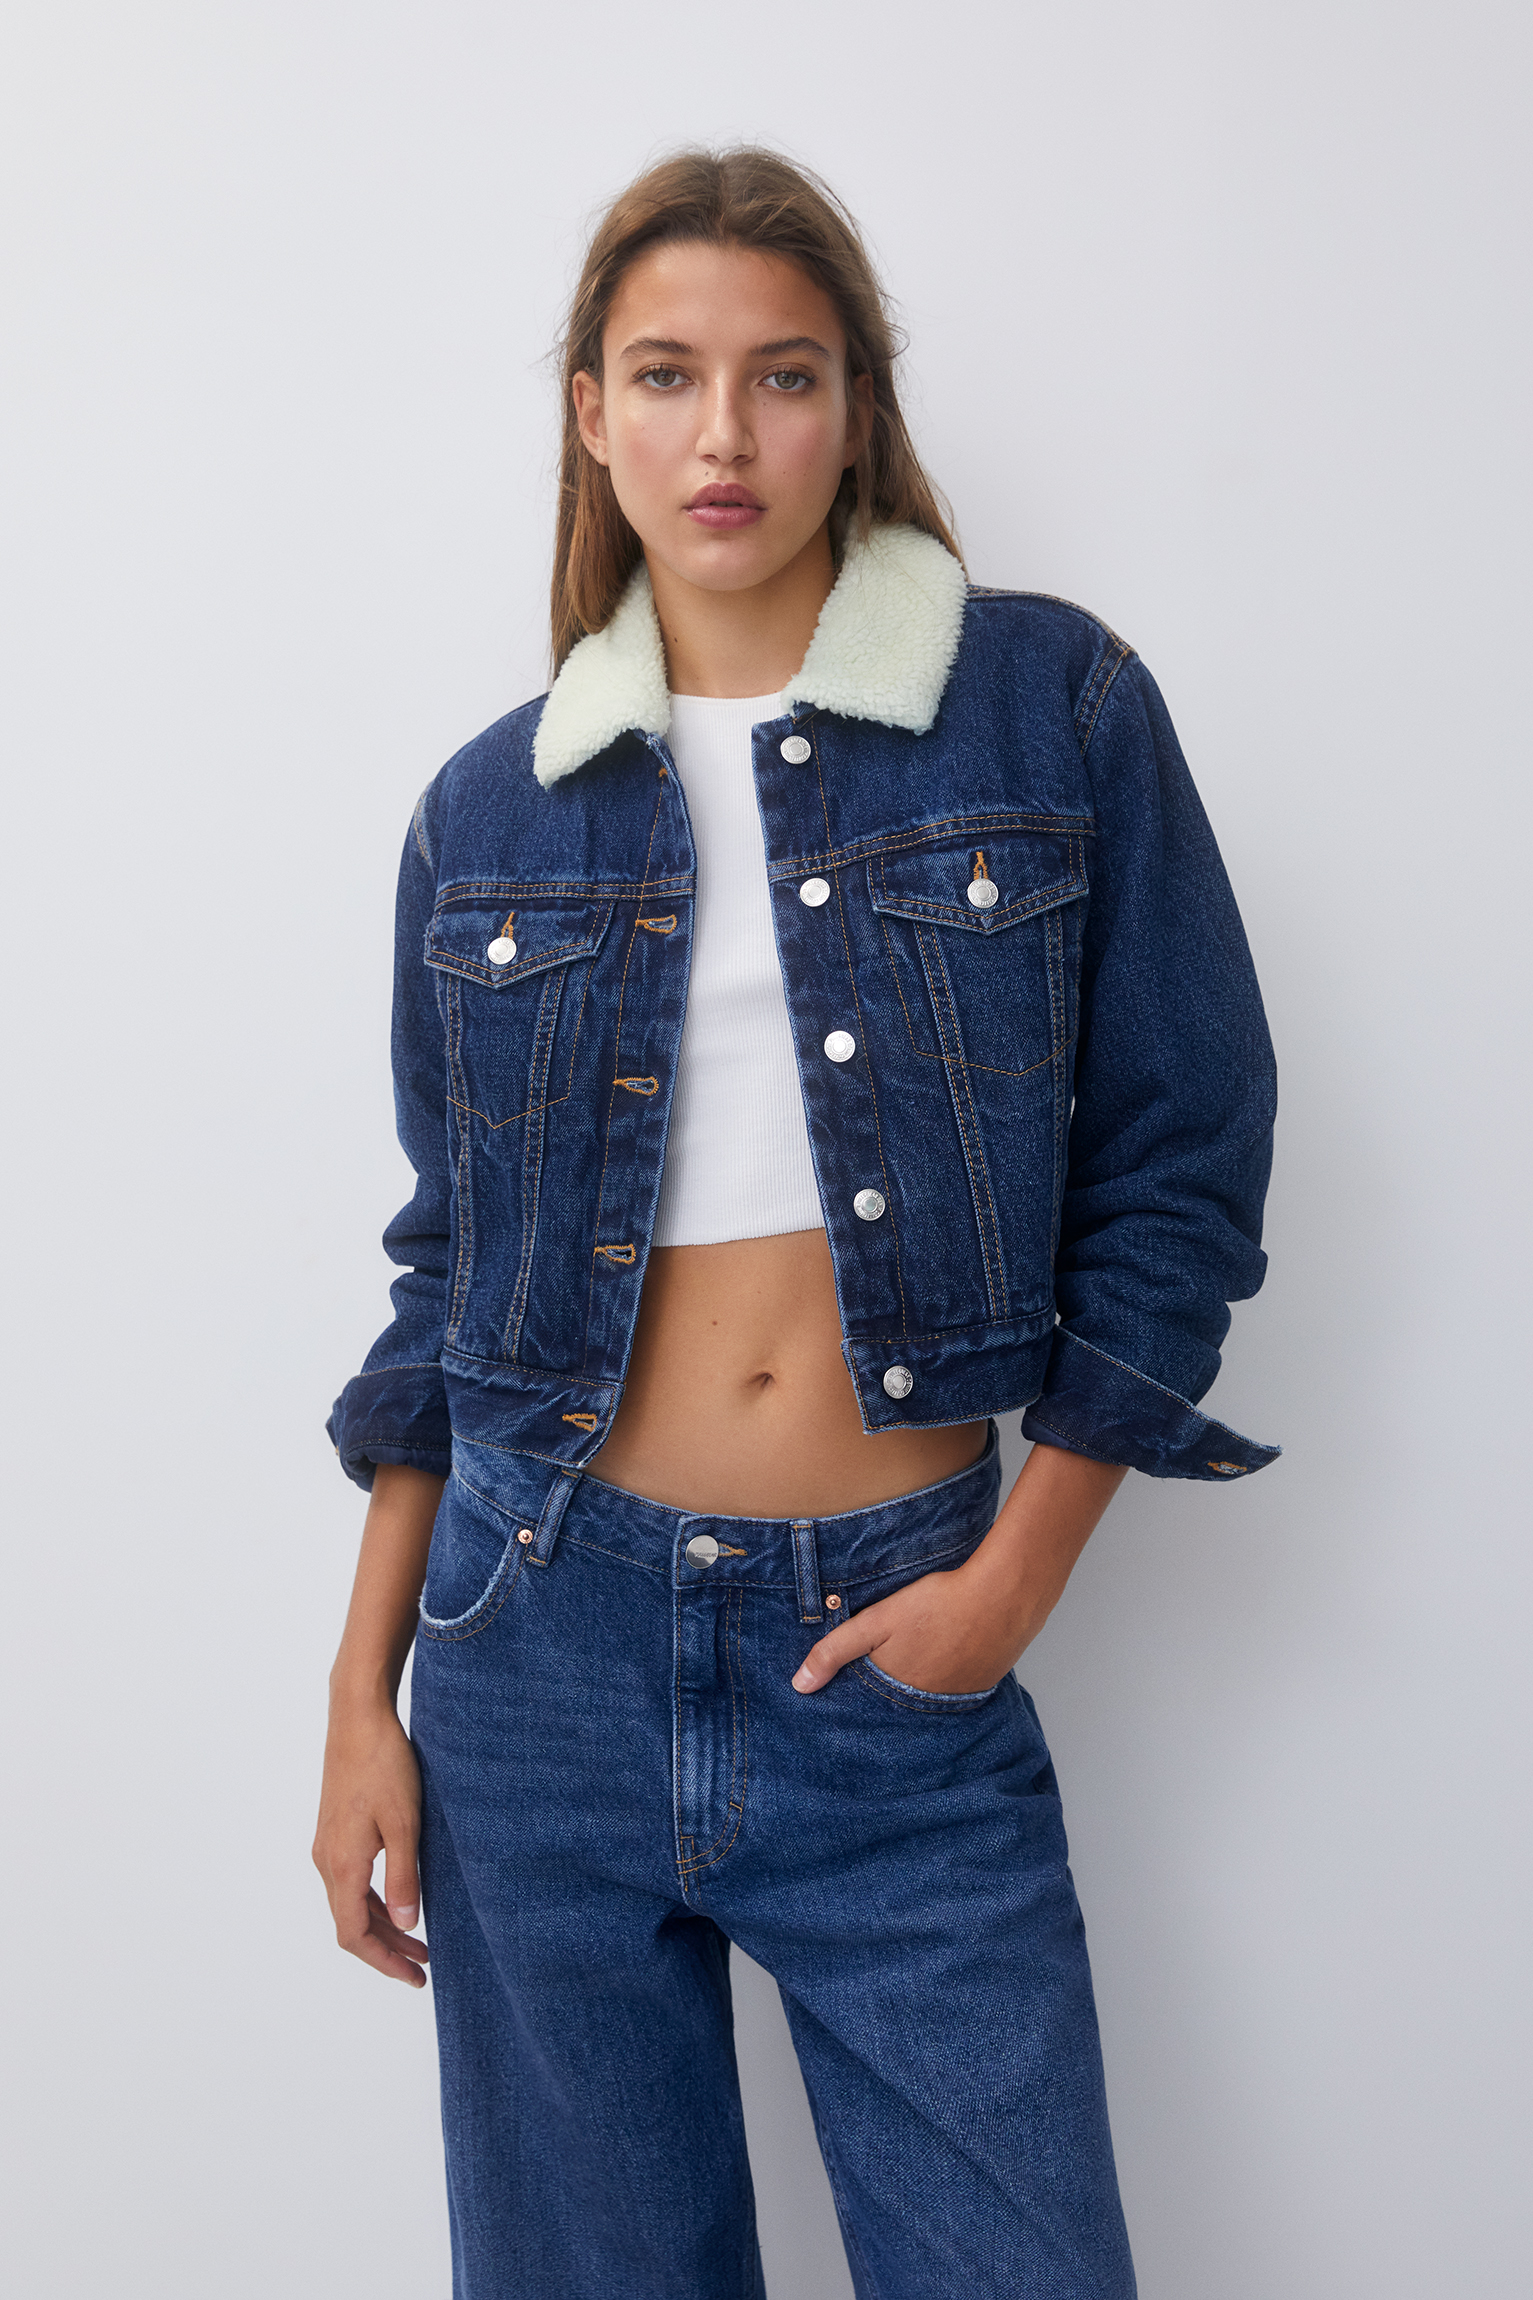 tuduoms Women's Sherpa Lined Denim Jacket Trendy Button Down Cropped Jean  Jacket Warm Boyfriend Trucker Jackets Short Coats at Amazon Women's Coats  Shop